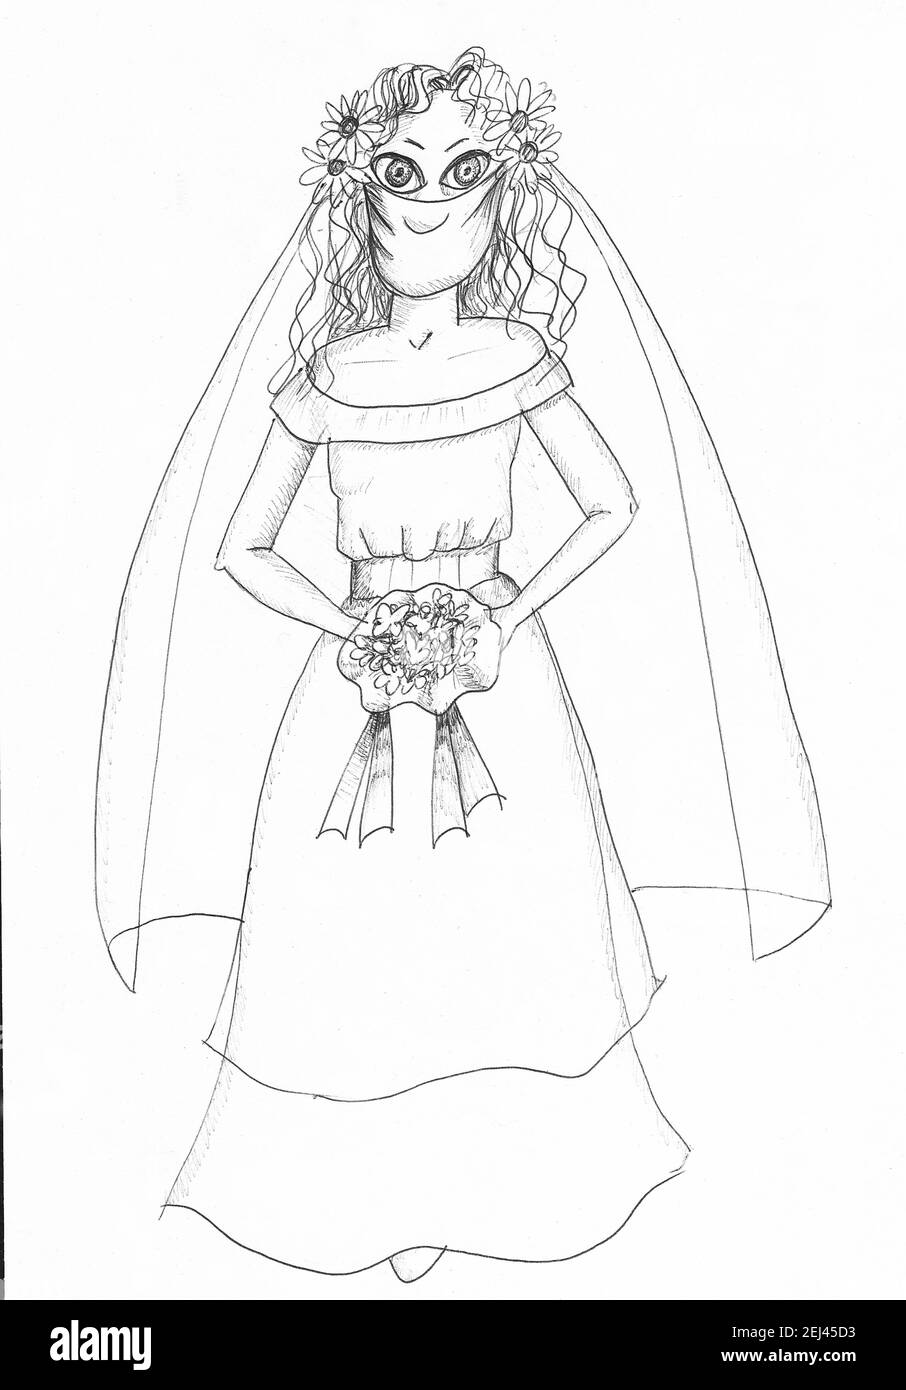 Bride wearing mask. Illustration. Stock Photo